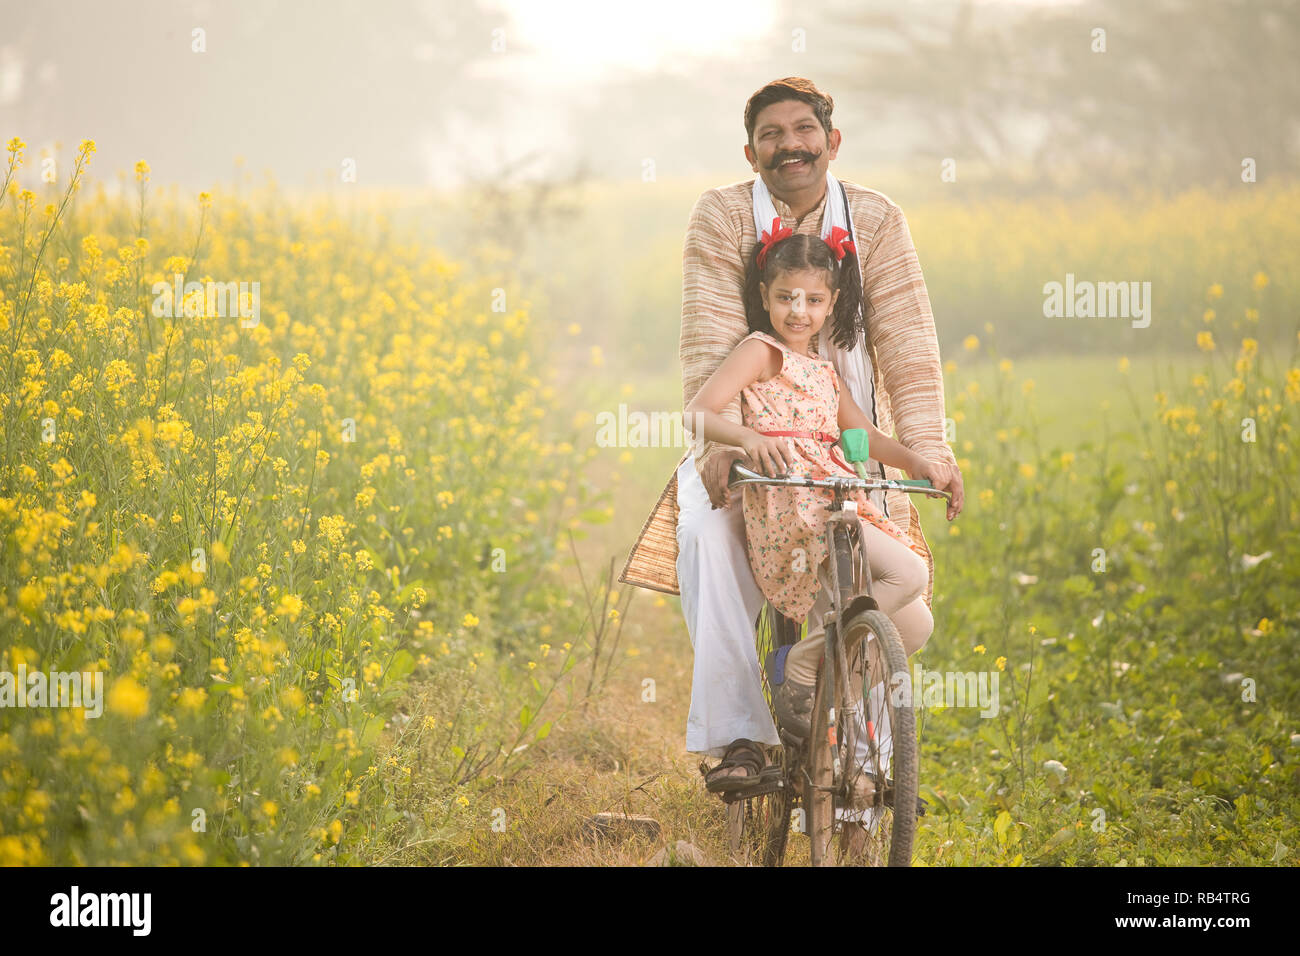 Fermier heureux avec sa fille équitation location sur le colza, domaine de l'agriculture Banque D'Images